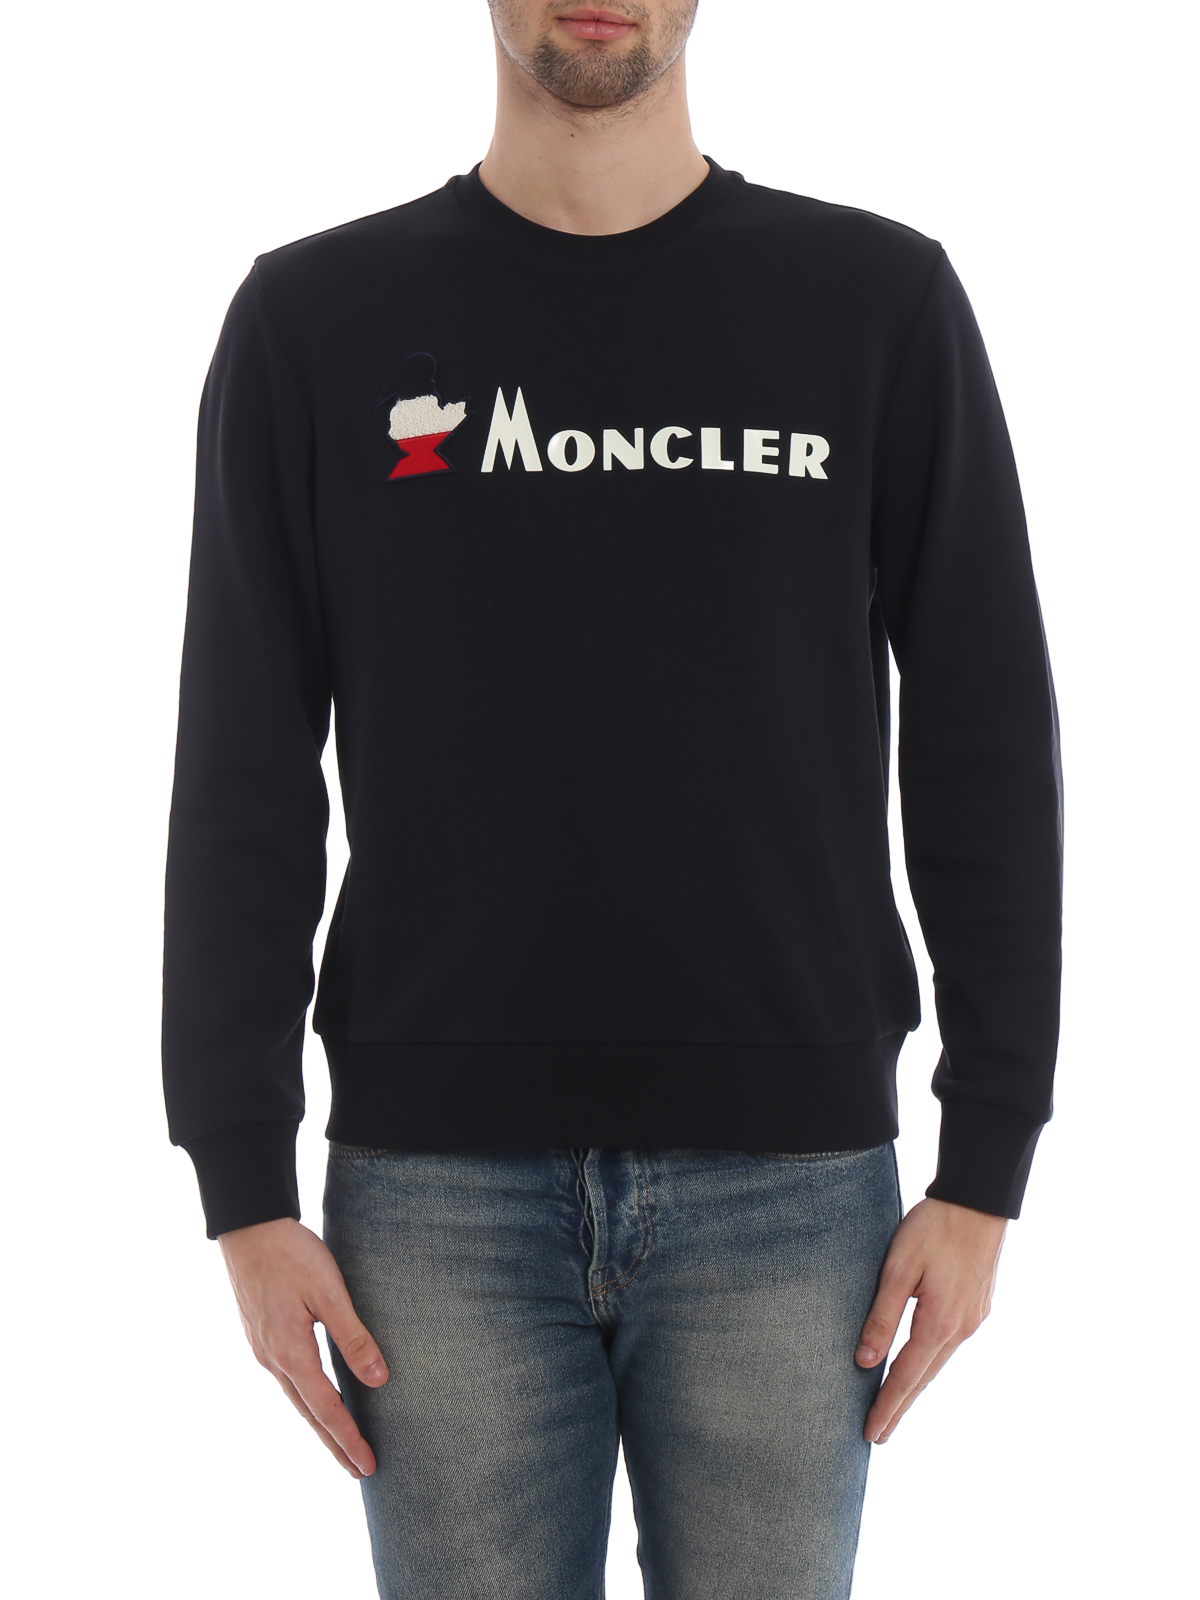 moncler sweatshirt